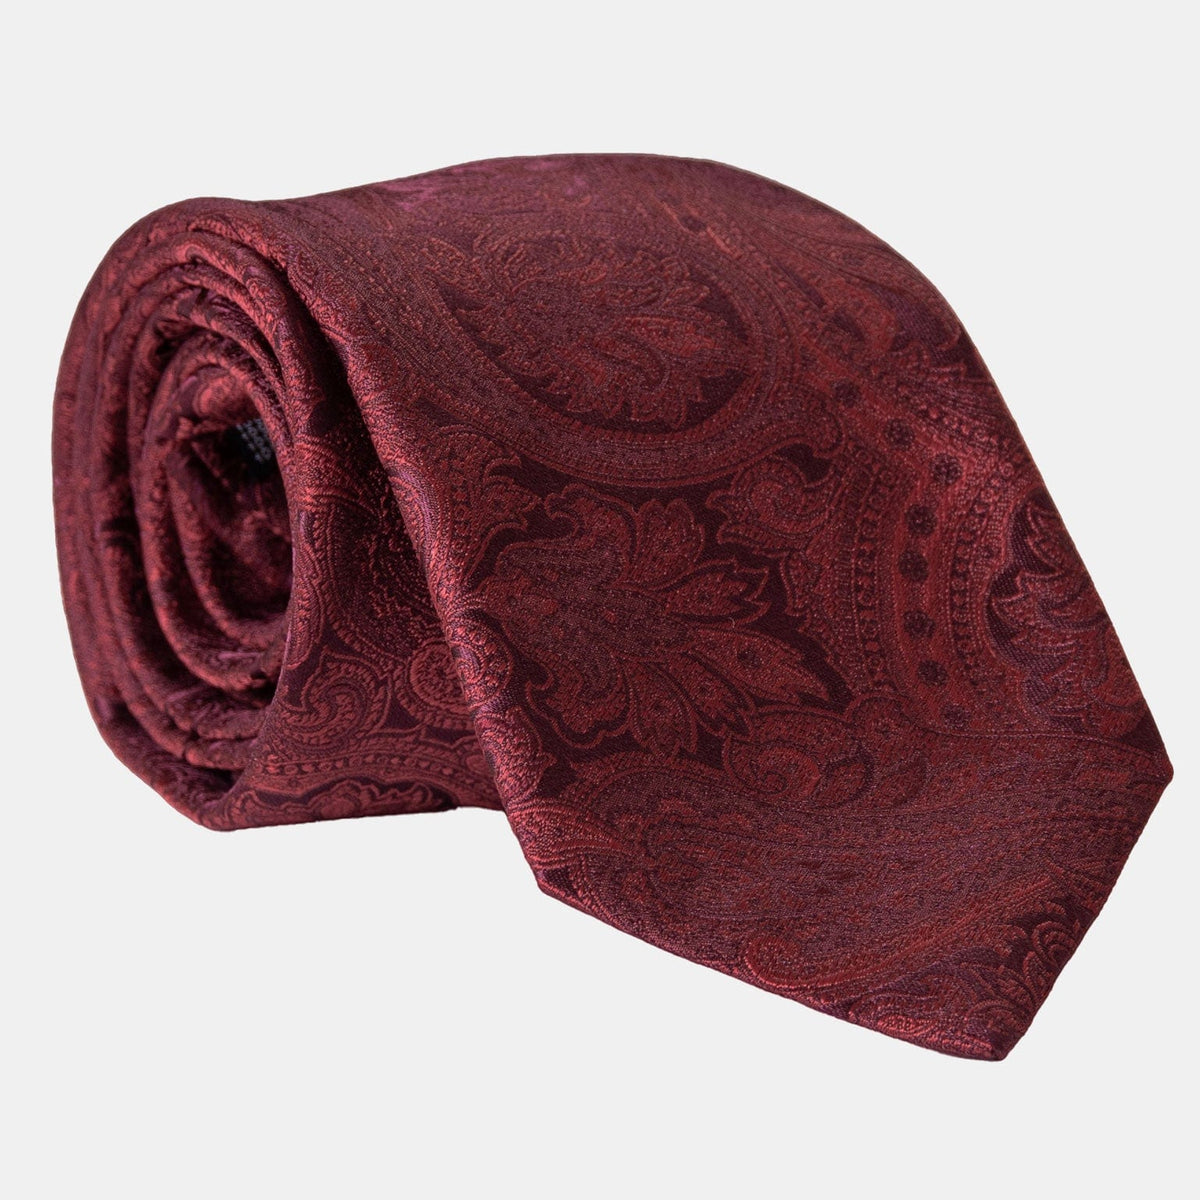 Extra Long Burgundy Paisley Italian Silk Jacquard Tie